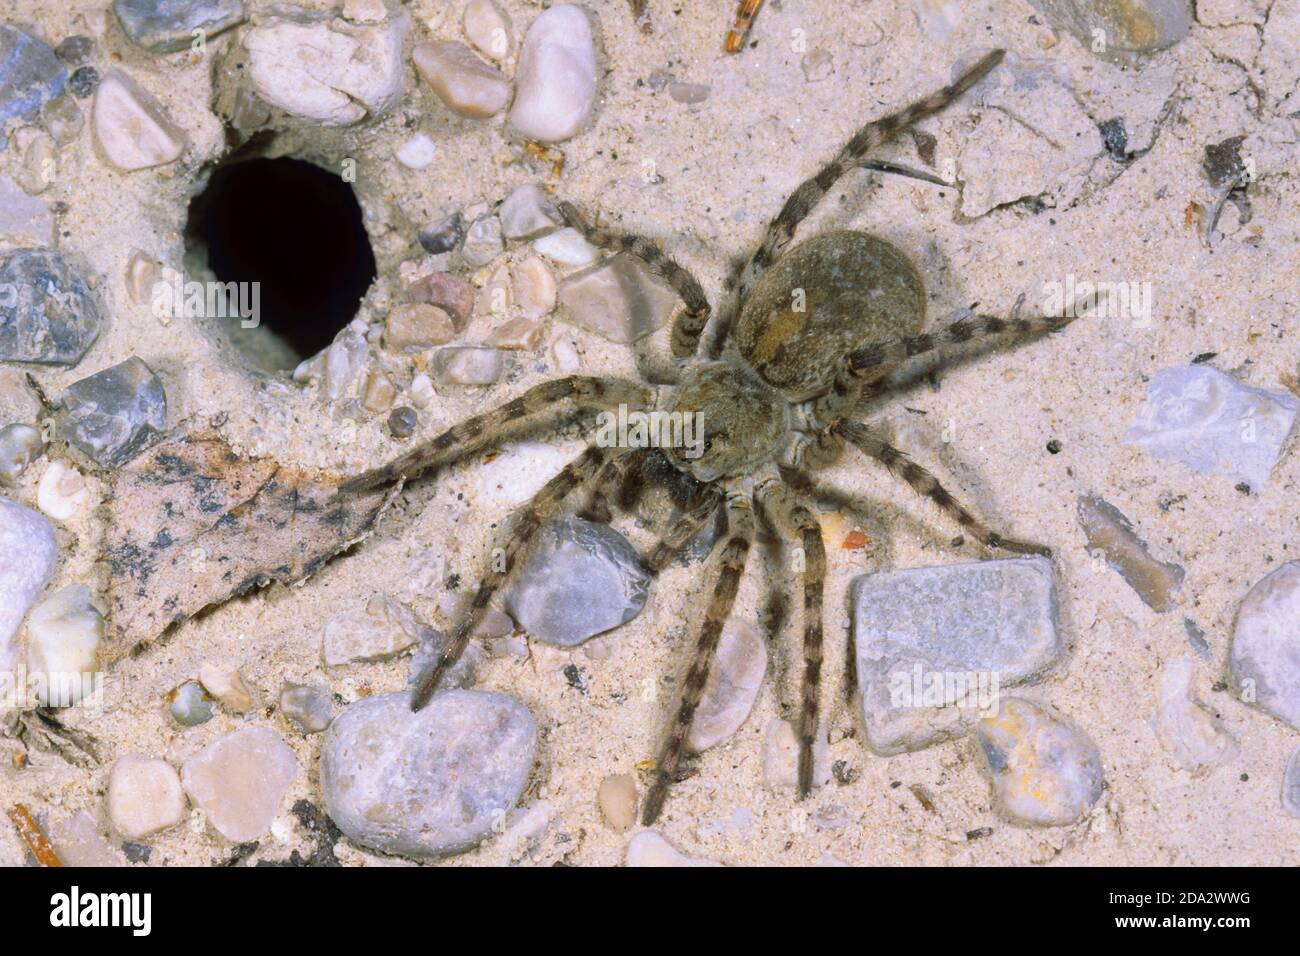 araignée de loup, araignée terrestre (Arctosa cinerea), femelle à l'entrée du tube vivant, Allemagne Banque D'Images